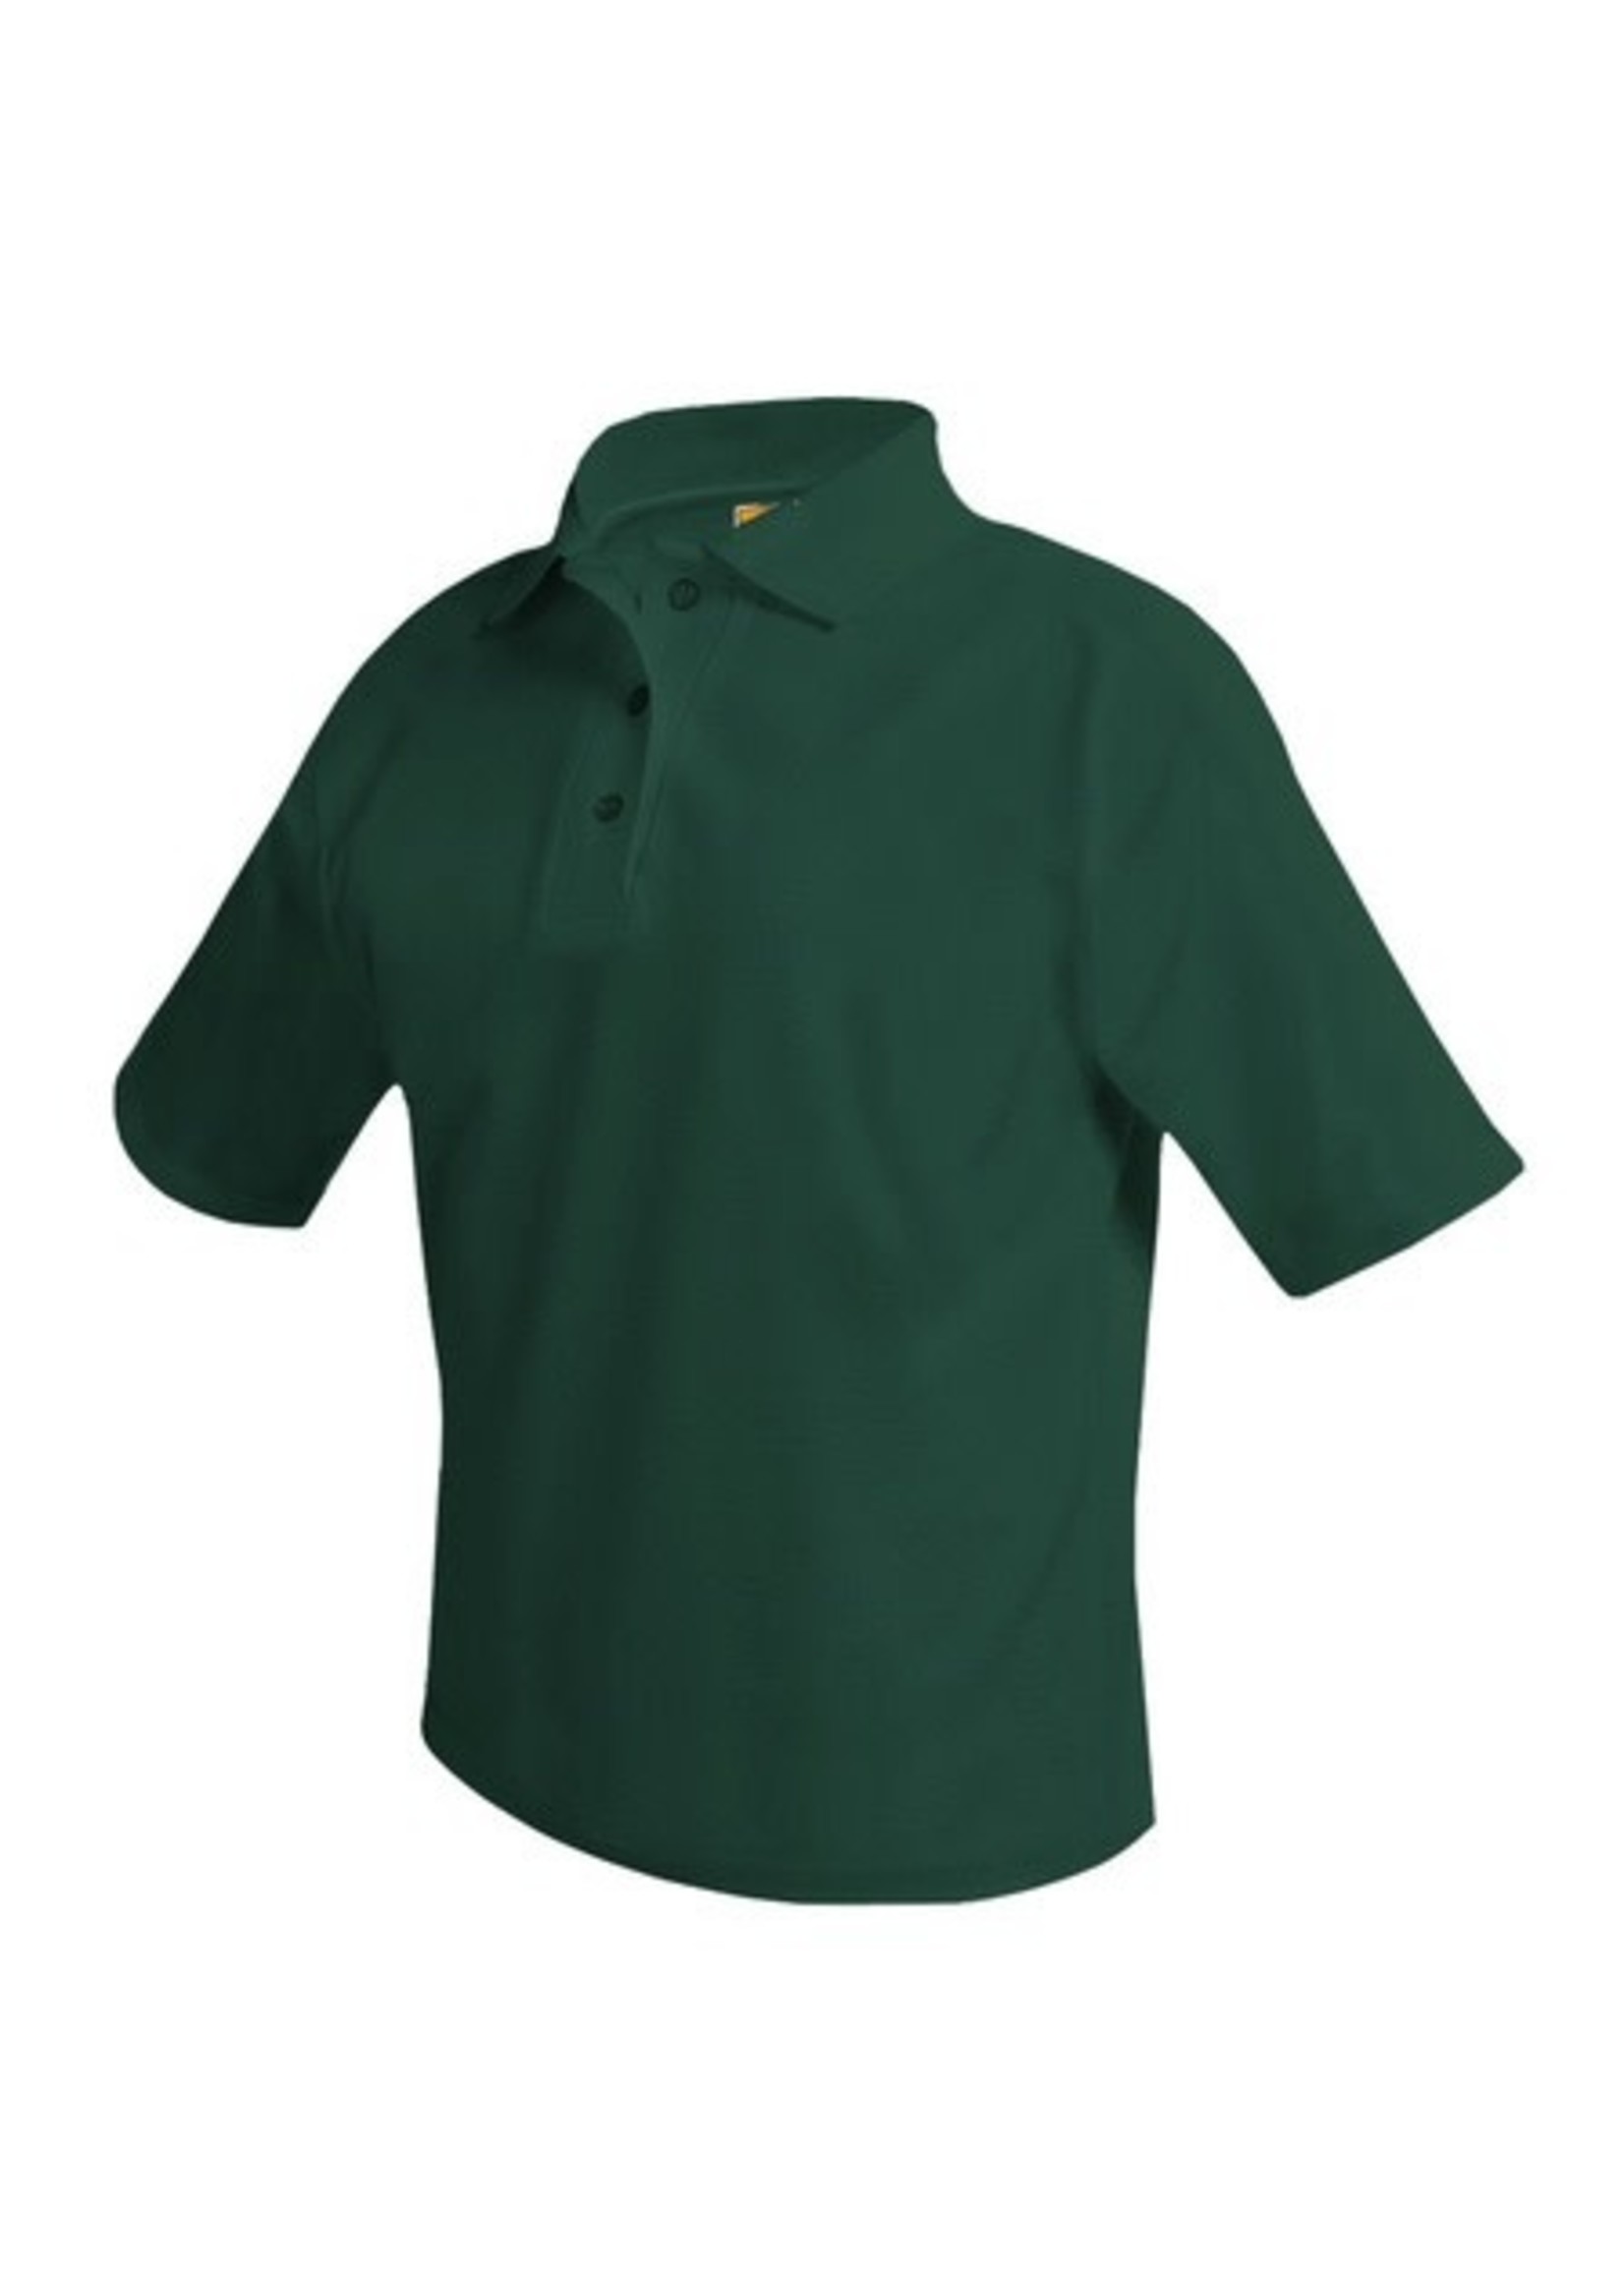 UNIFORM CLOSEOUT - Pique Polo Short Sleeve Shirt, Unisex